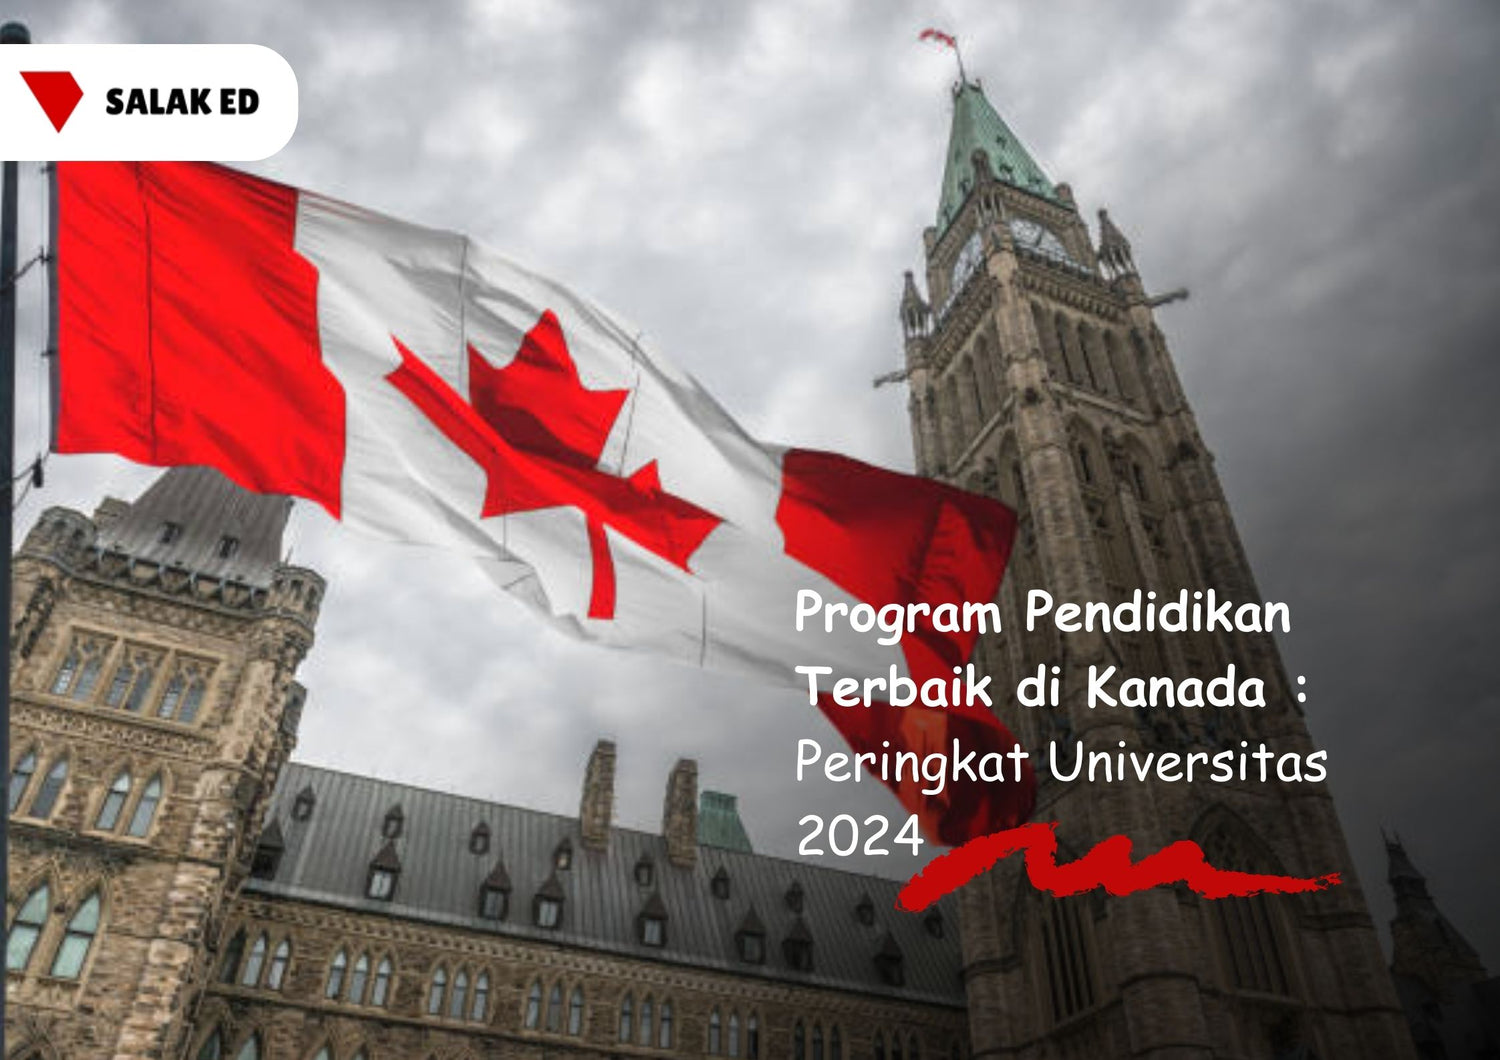 Program Pendidikan Terbaik di Kanada: Peringkat Universitas 2024